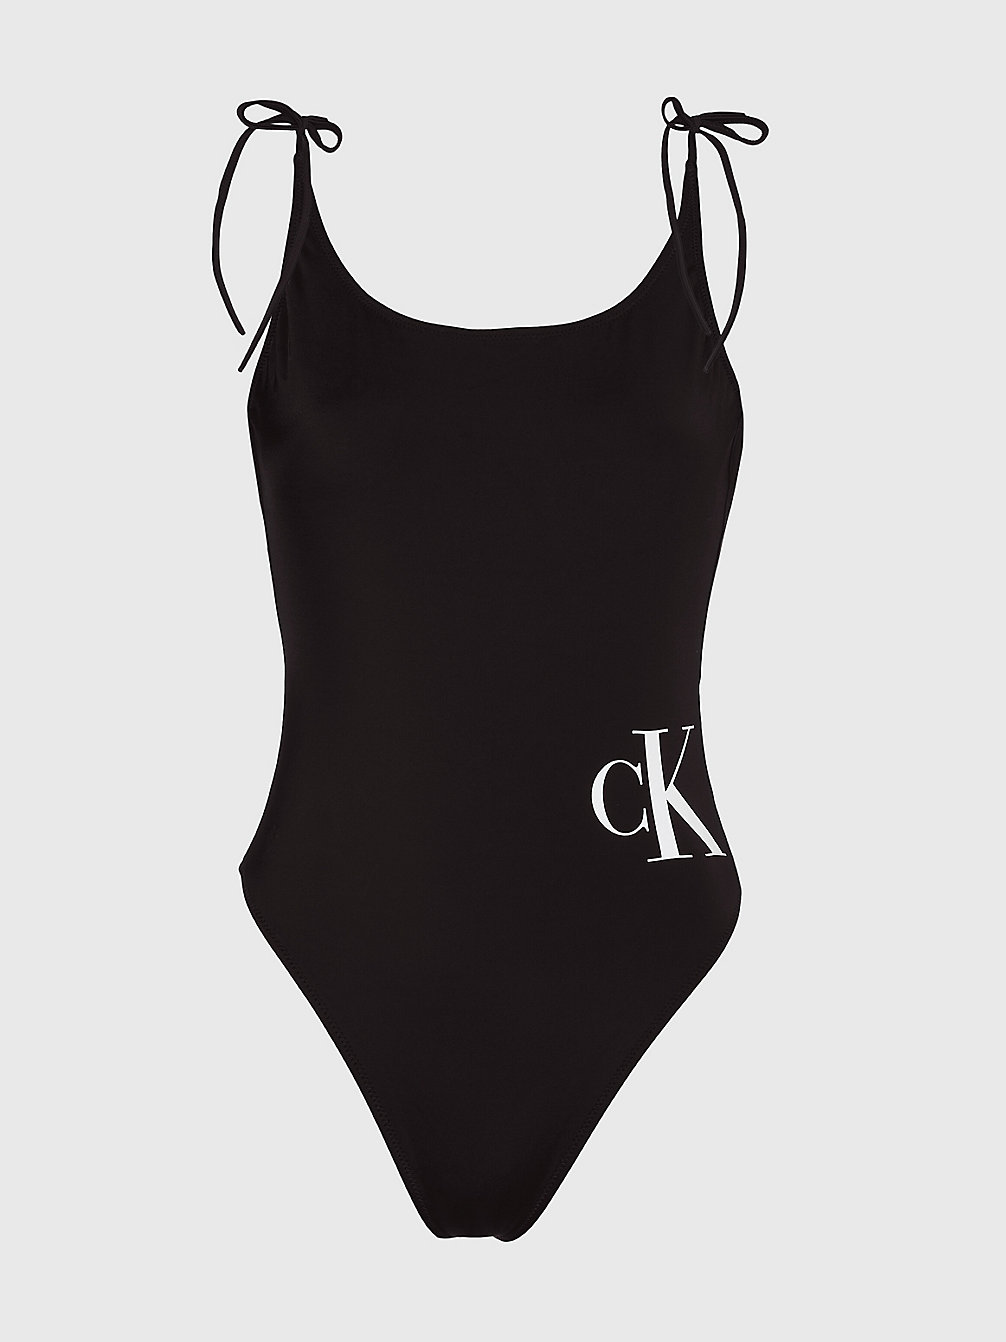 PVH BLACK Geschenkset Aus Badeanzug, Stirnband Und Handtuch undefined Damen Calvin Klein